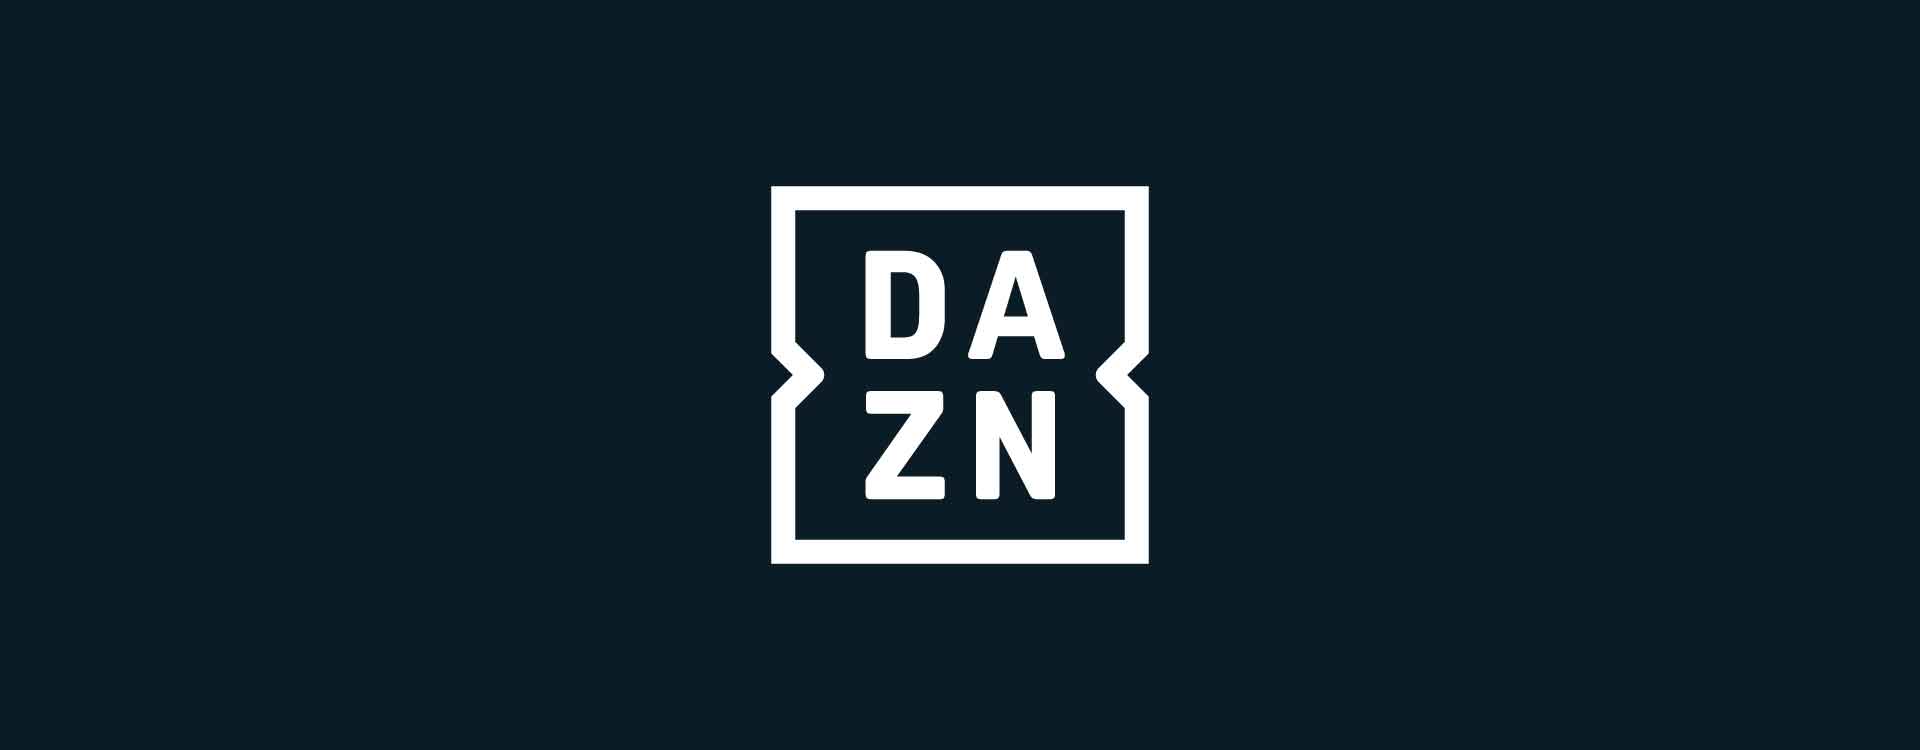 banner-DAZN